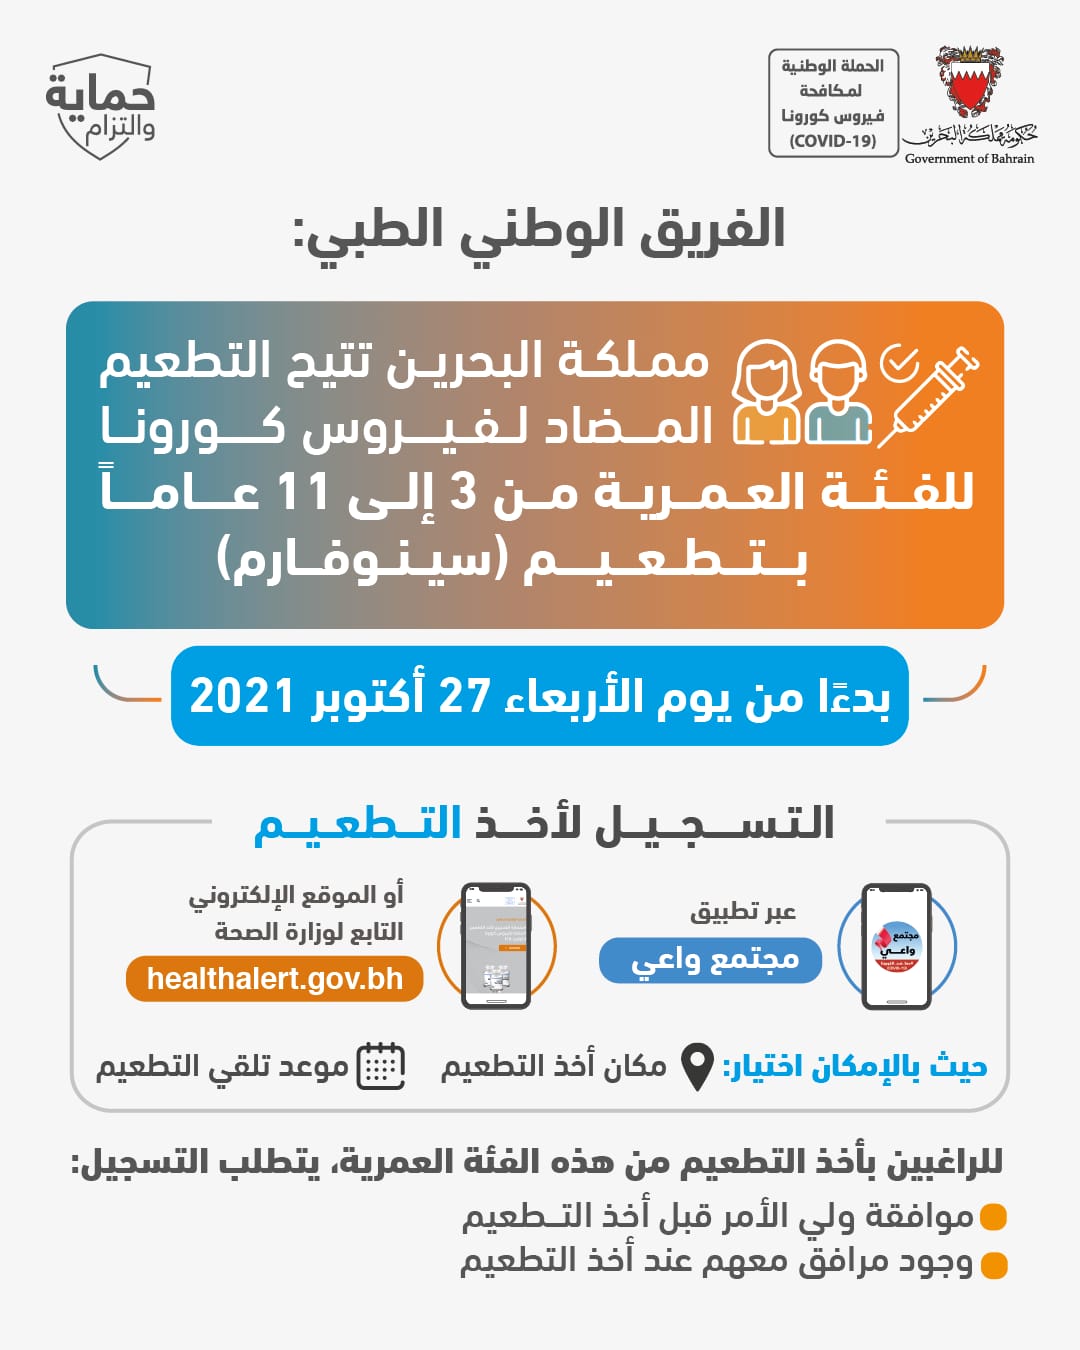 بدءًا من يوم غد الأربعاء الموافق 27 أكتوبر 2021م مملكة البحرين تتيح التطعيم المضاد لفيروس كورونا للفئة العمرية من 3 إلى 11 عاماً بتطعيم (سينوفارم)